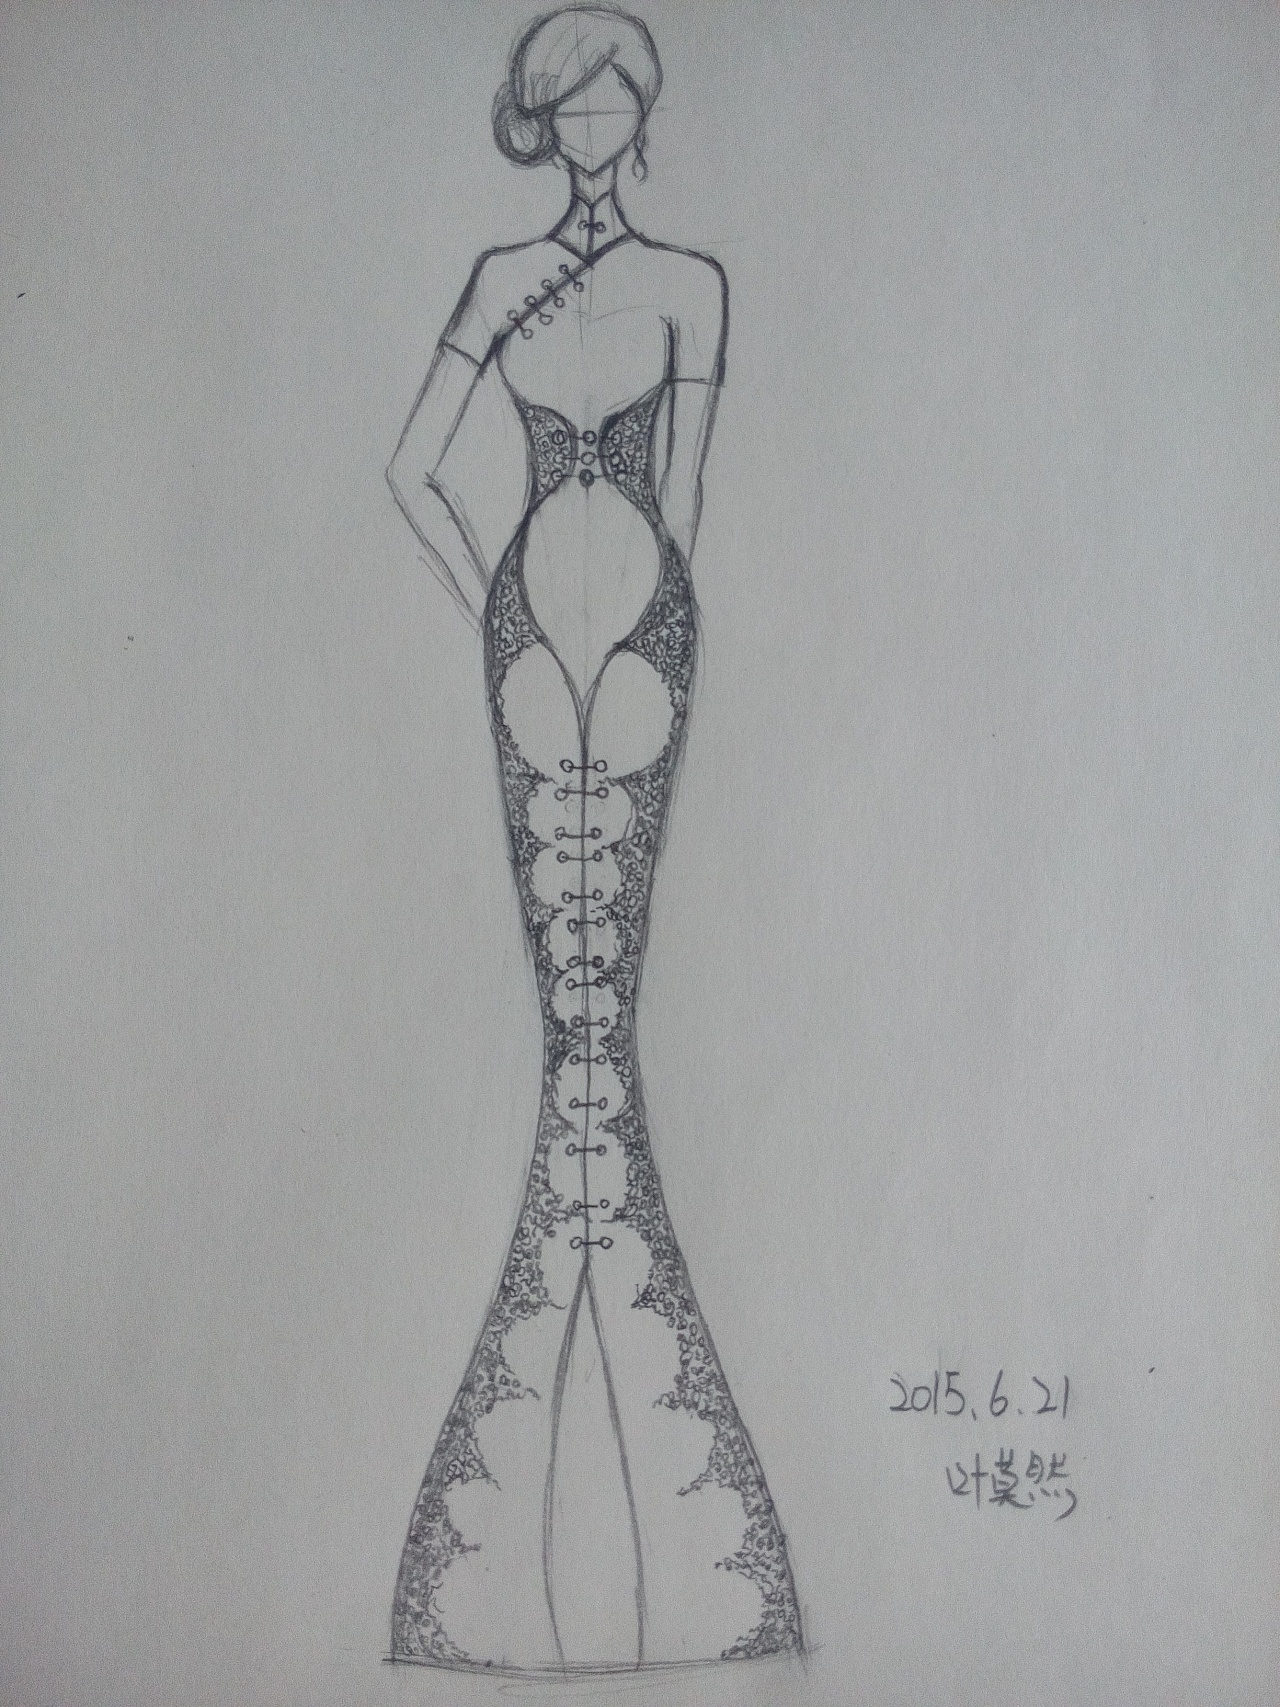 用传统旗袍的形为整体线条设计,加入简单花型的刺绣,制成优雅"含梦"的